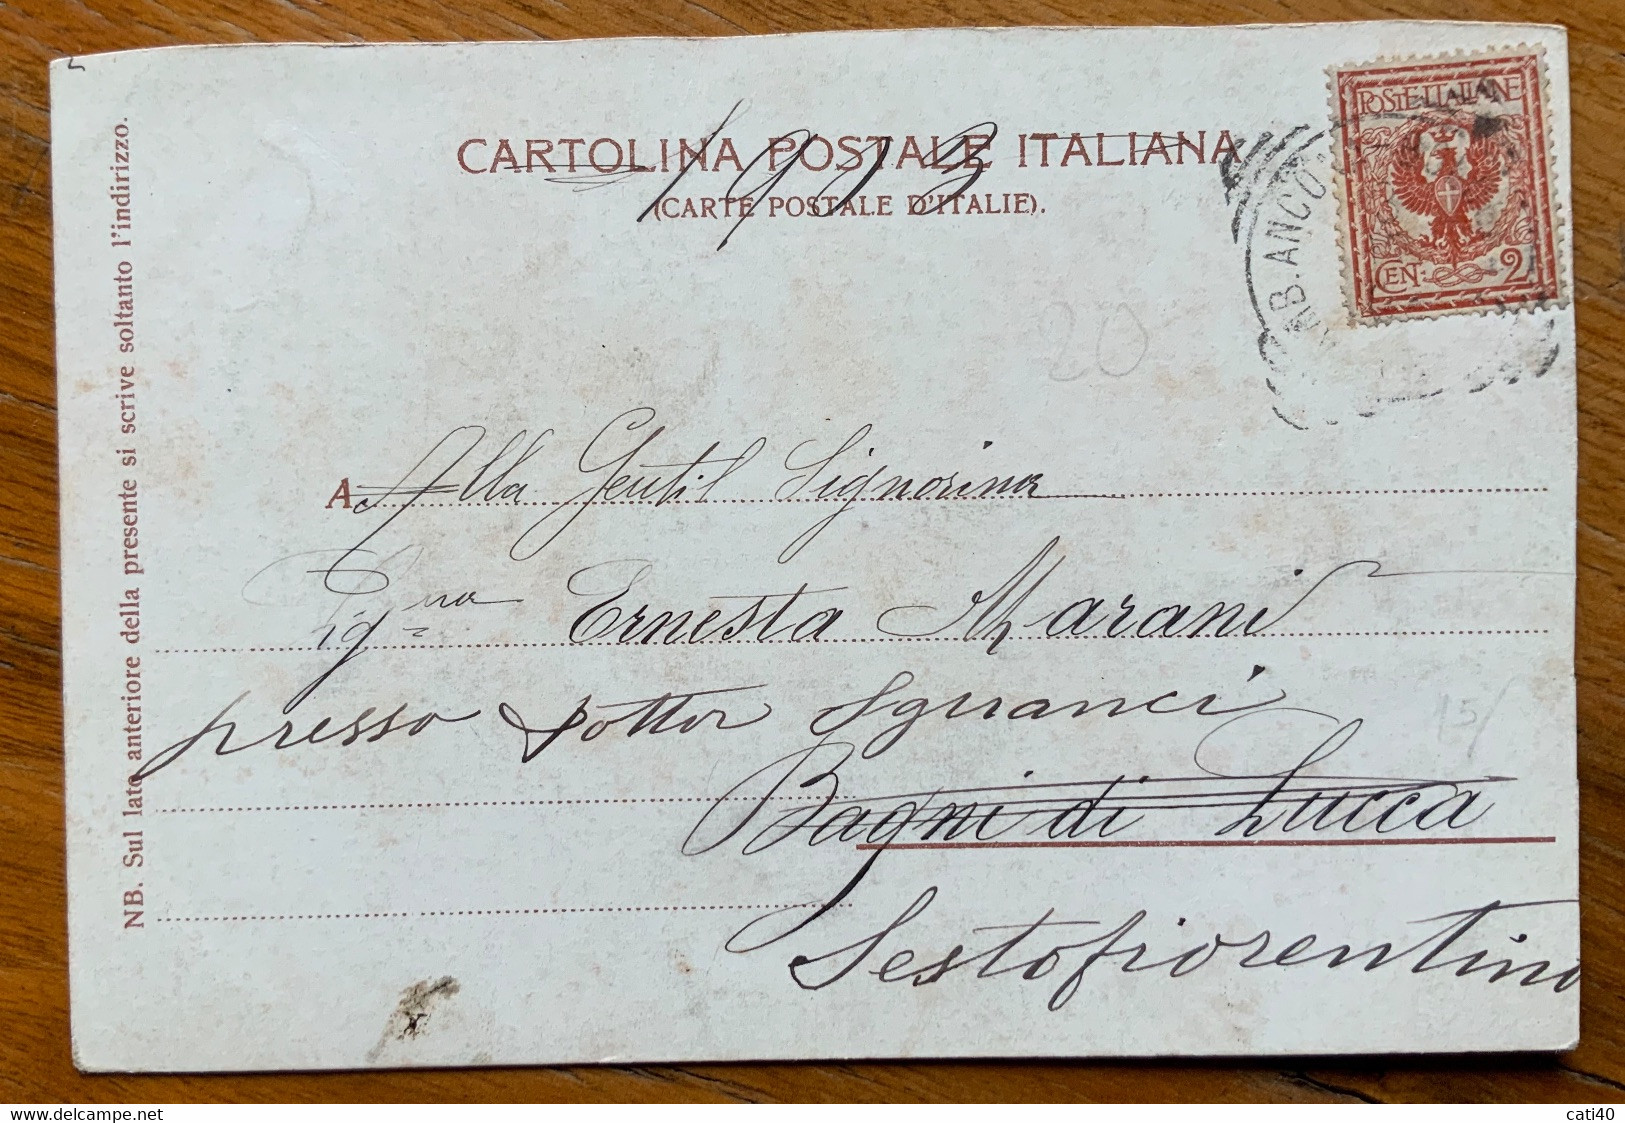 FAENZA - PROSPETTIVA DEL PASSEGGIO PUBBLICO  - VIAGGIATA  1902 CON AMB. ANCONA BOLOGNA - Faenza